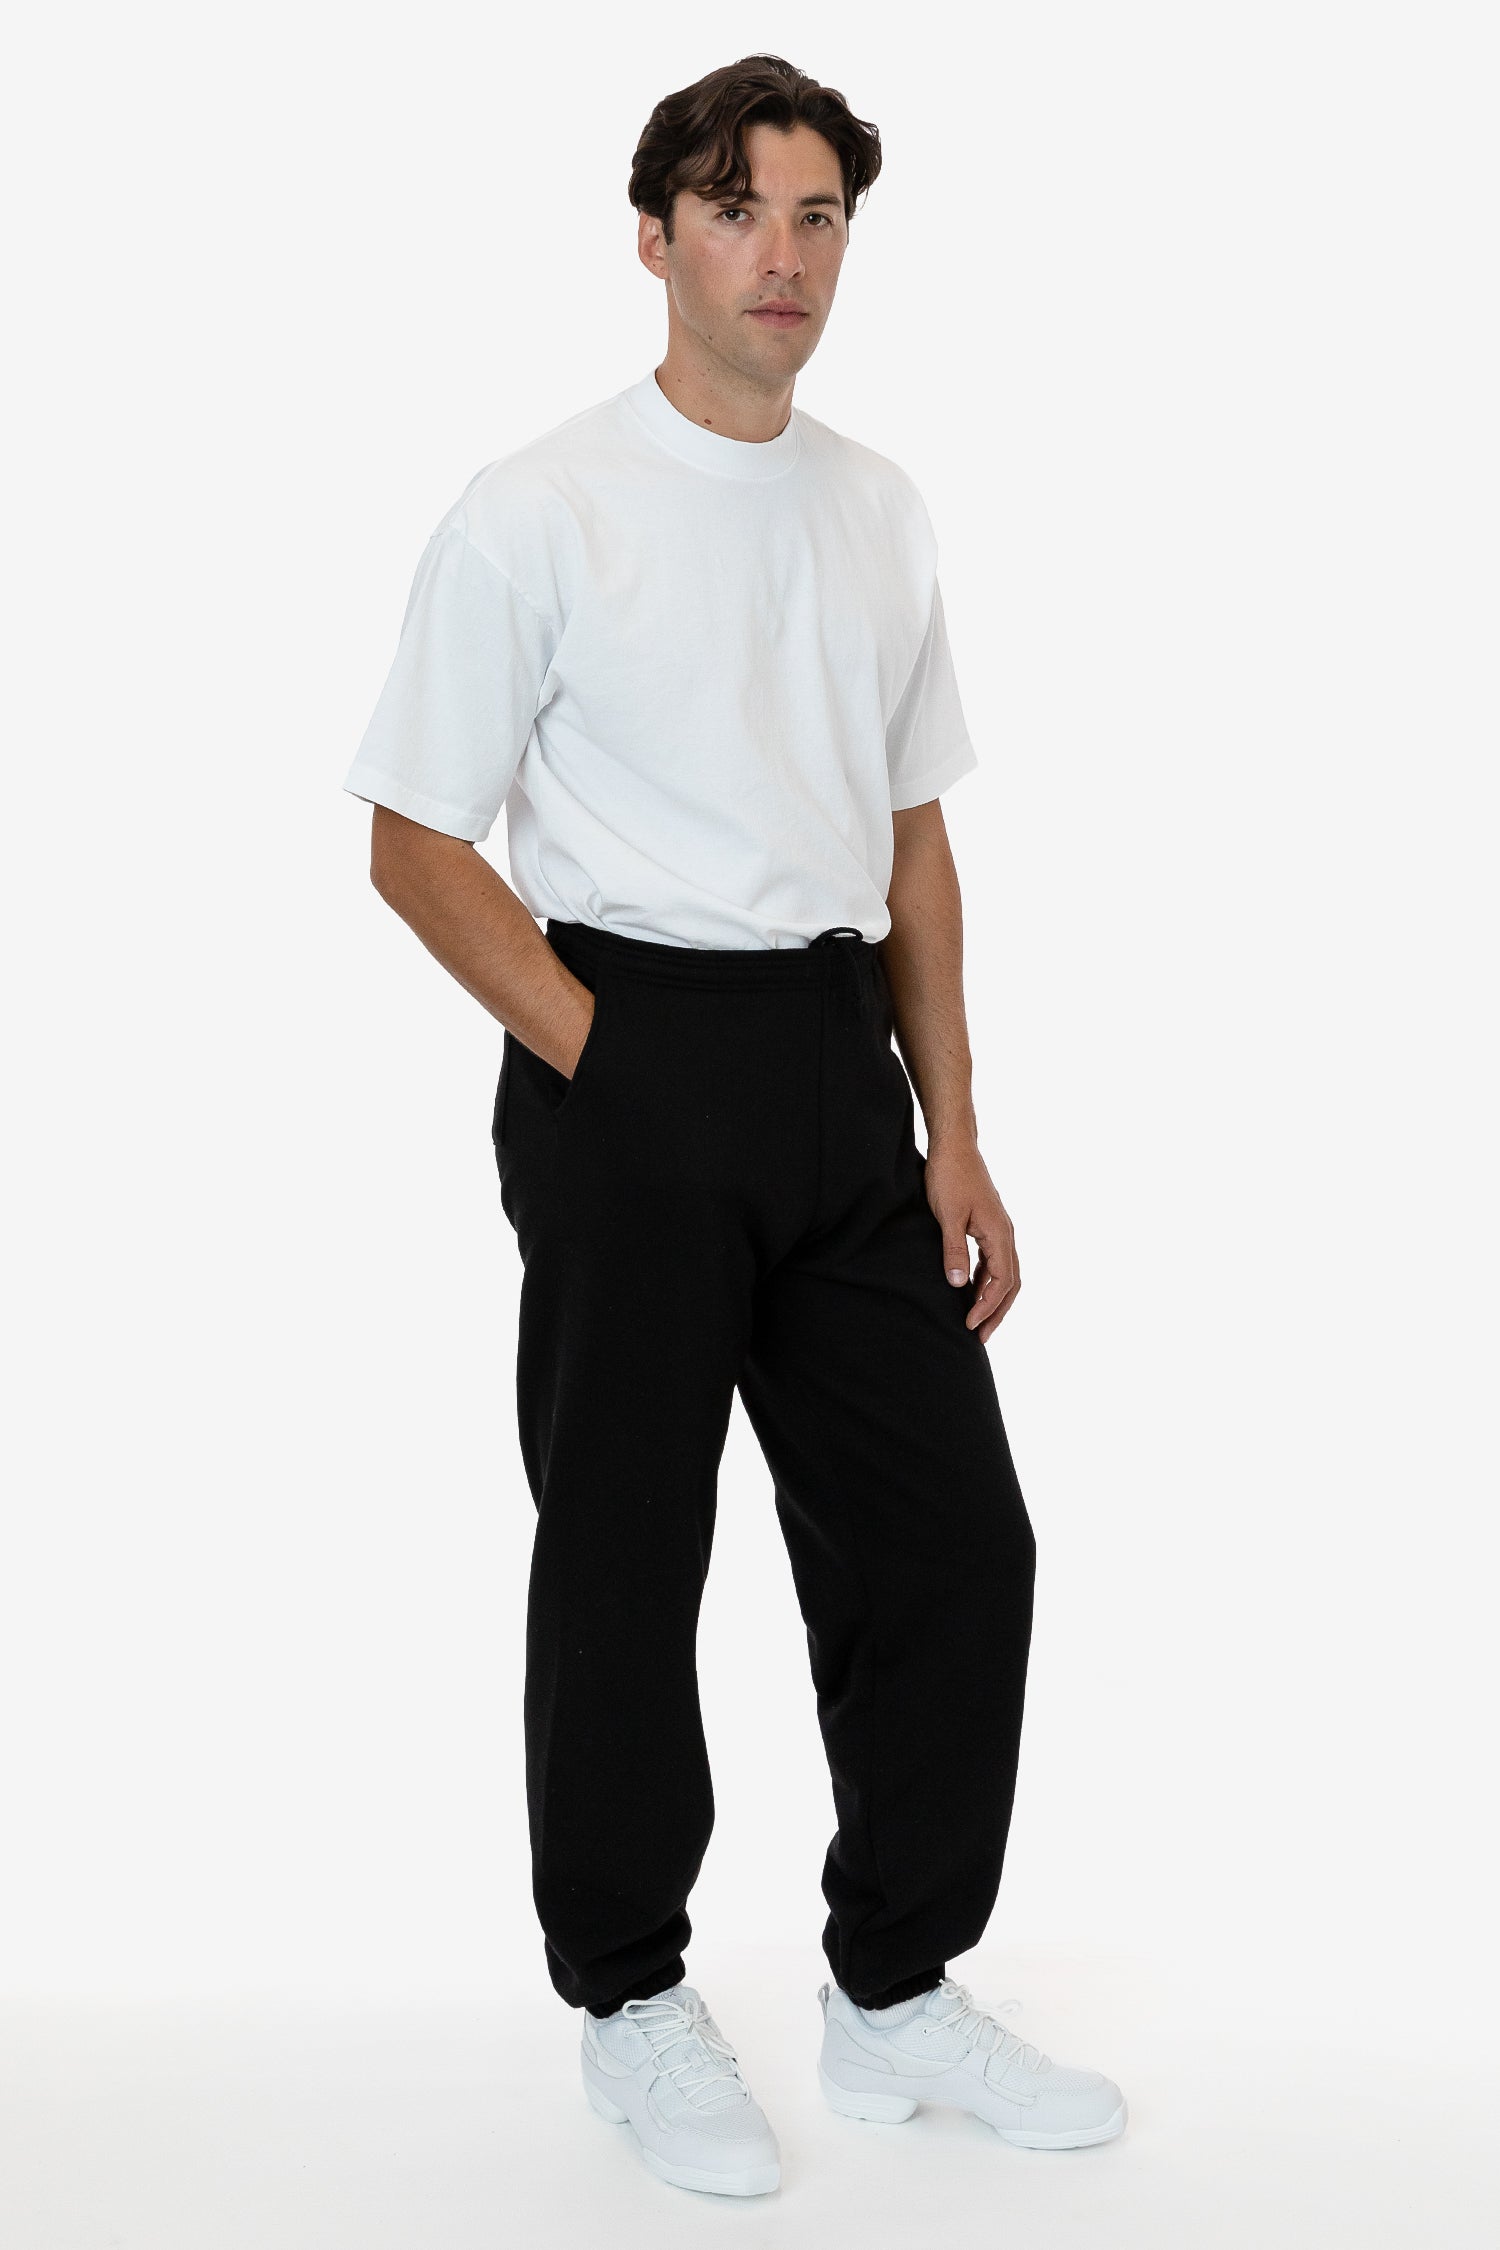 Represent Blank Sweatpant - Black - Represemt Clo® Online Shop